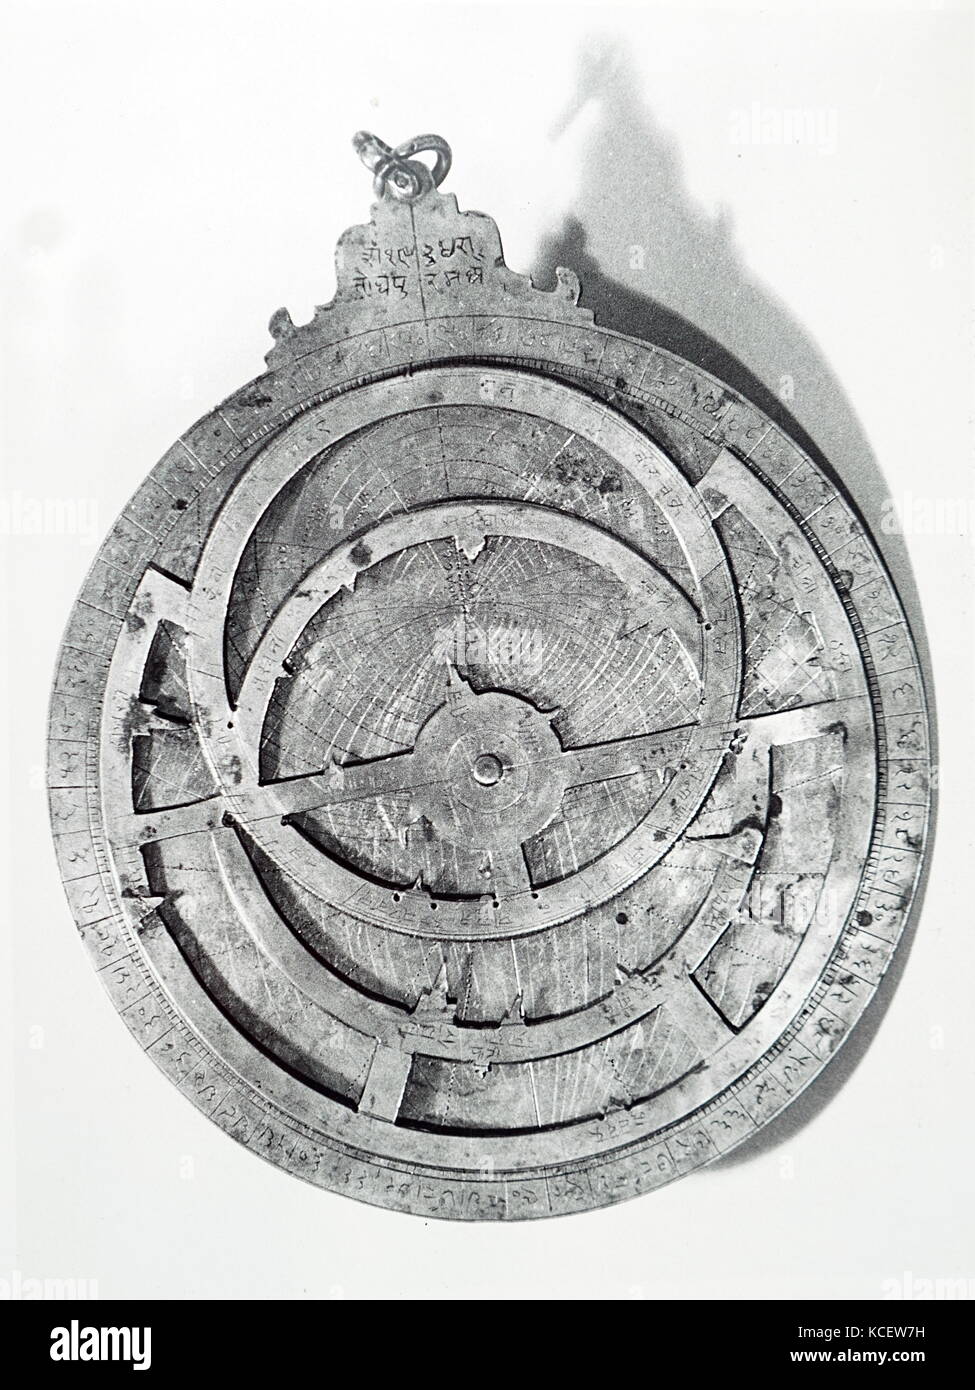 Ansicht der Vorderseite eines Messing Astrolabe. Ein astrolabium ist eine aufwendige Neigungsmesser, von Astronomen und Navigatoren verwendet, der Schräglage in den Himmel von einem Himmelskörper, bei Tag oder bei Nacht zu messen. Vom 19. Jahrhundert Stockfoto